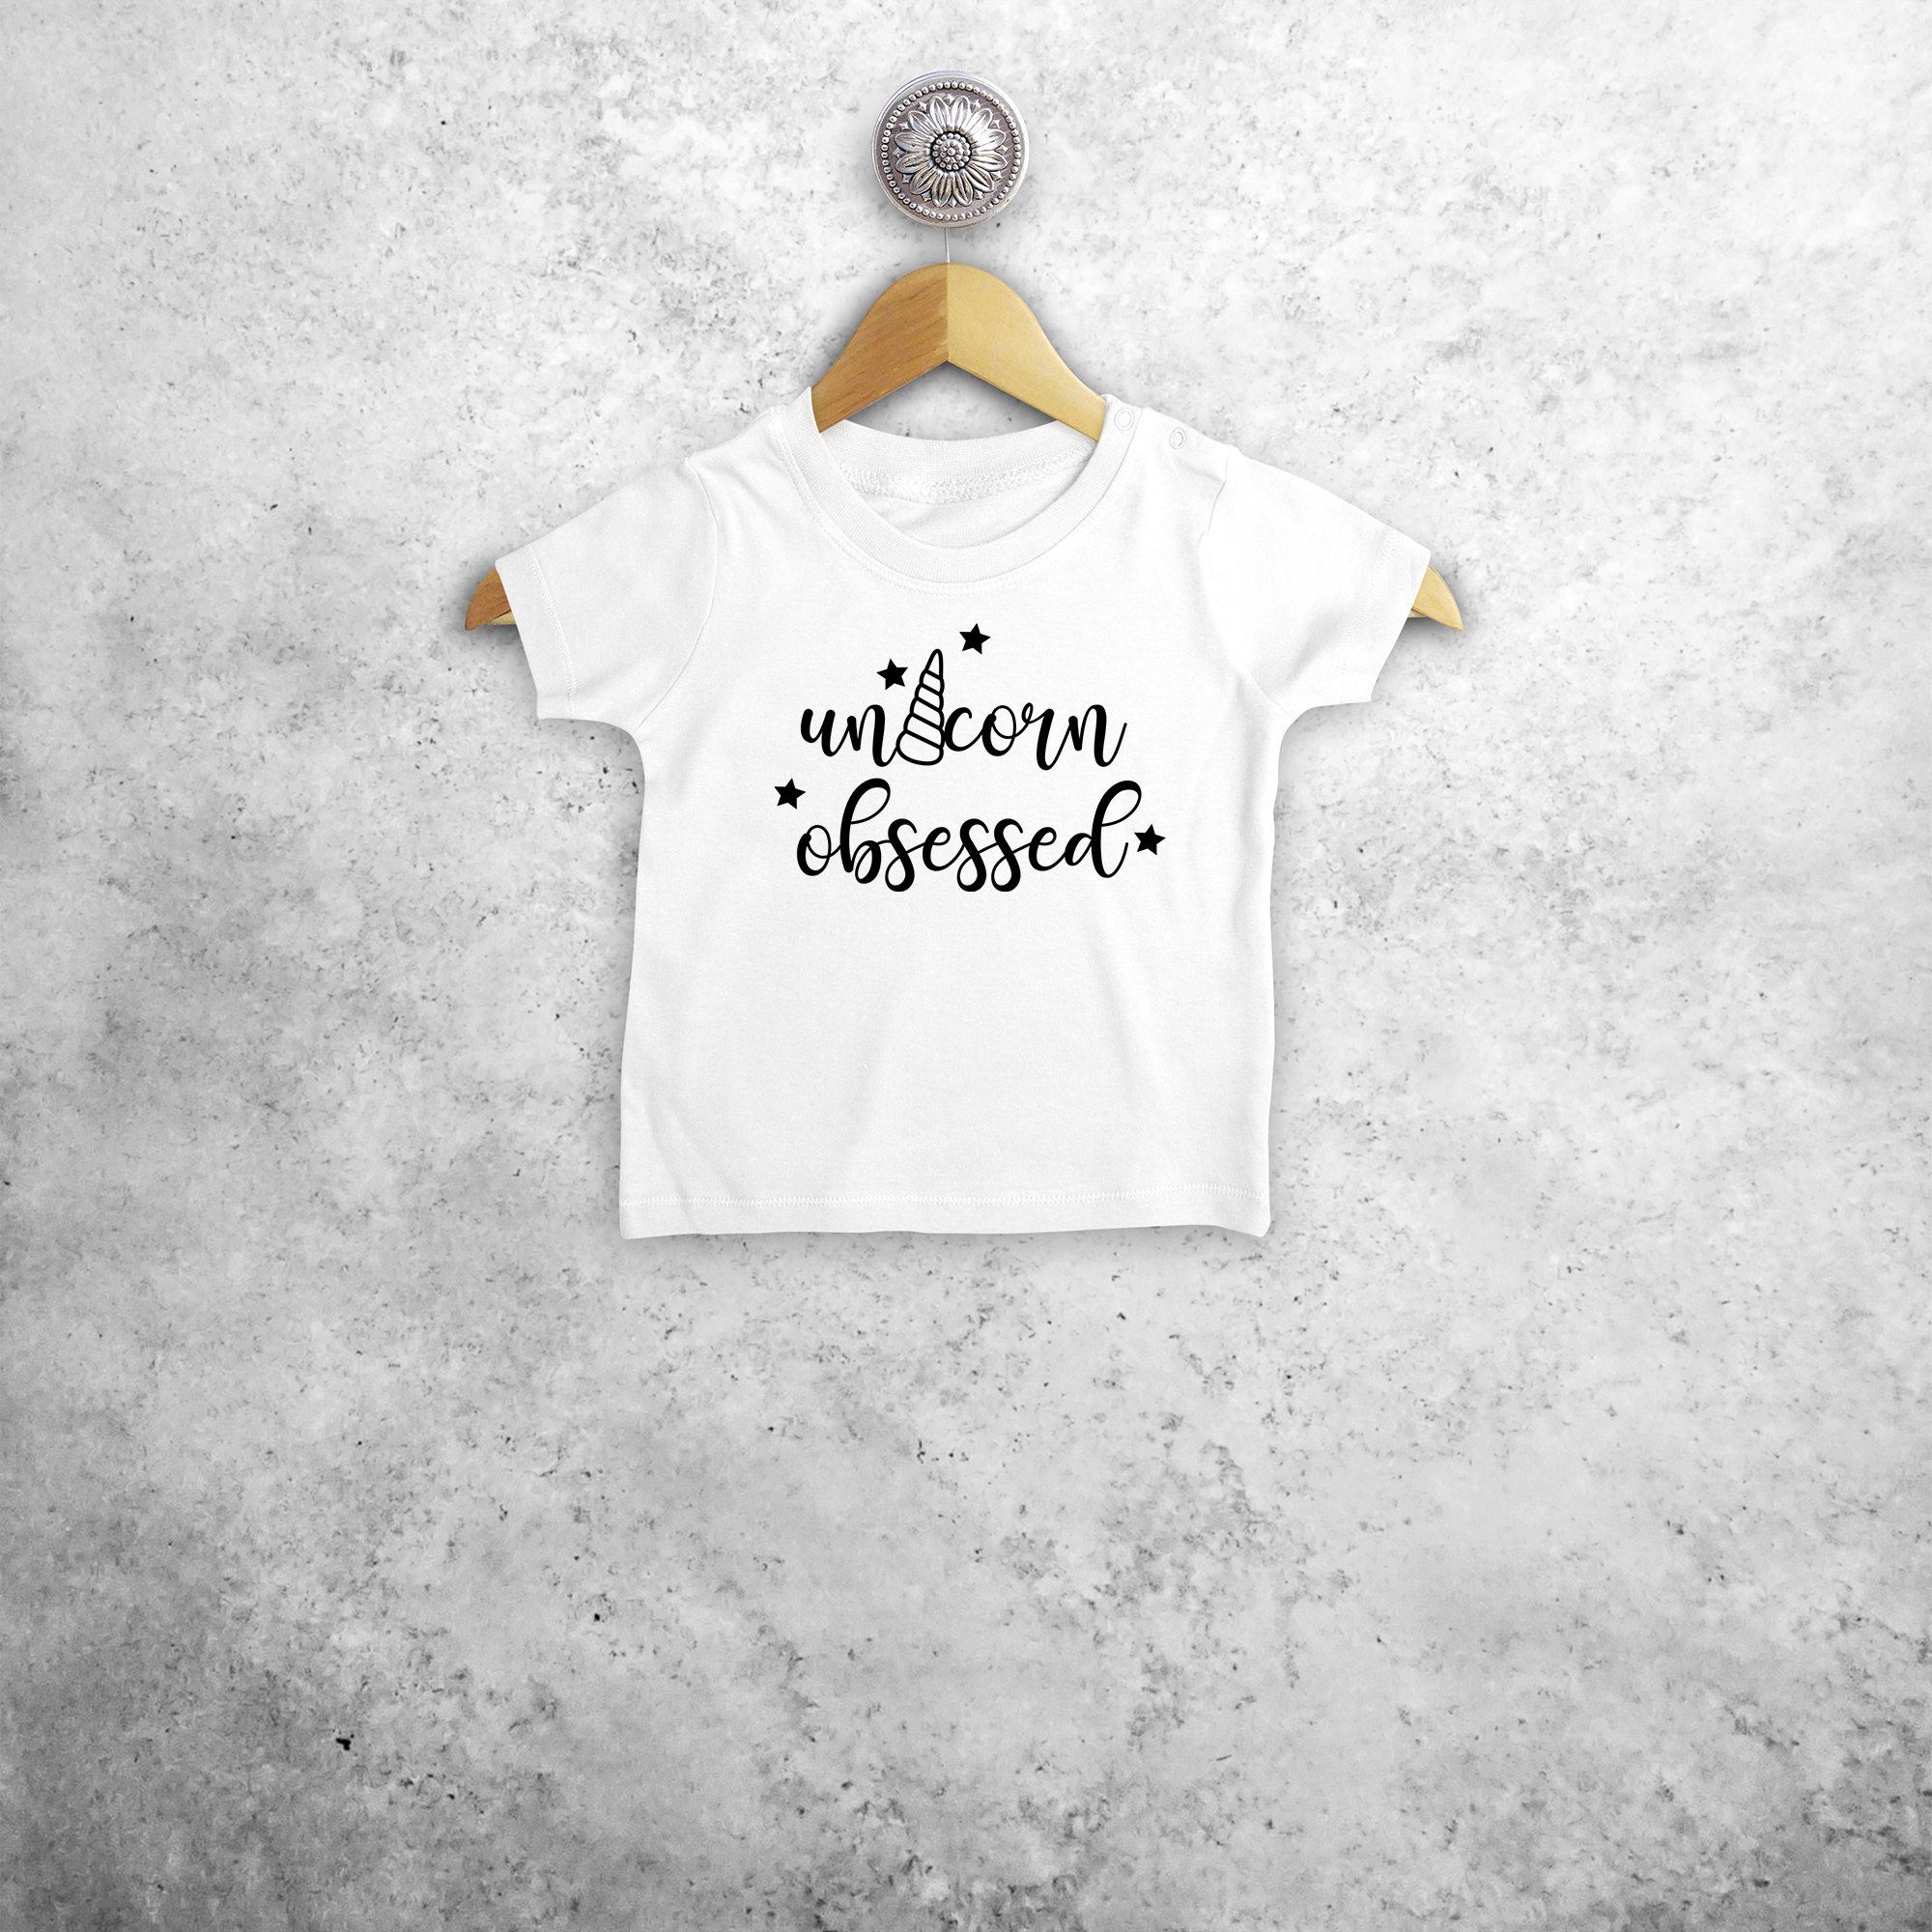 'Unicorn obsessed' baby shortsleeve shirt